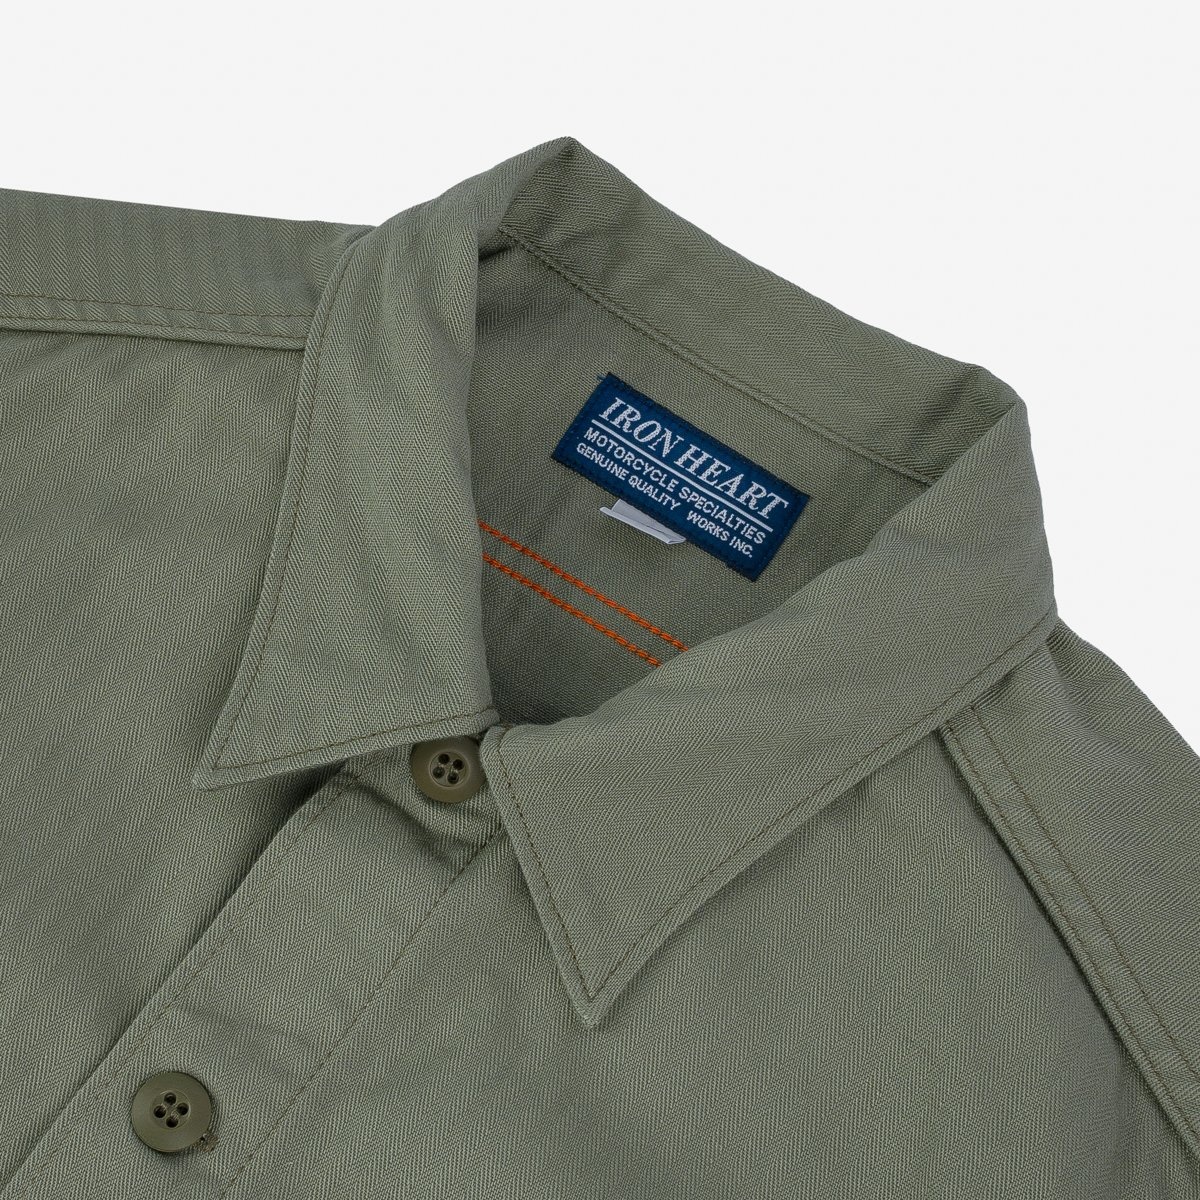 IHSH-385-ODG 9oz Herringbone Military Shirt - Olive Drab Green - 6